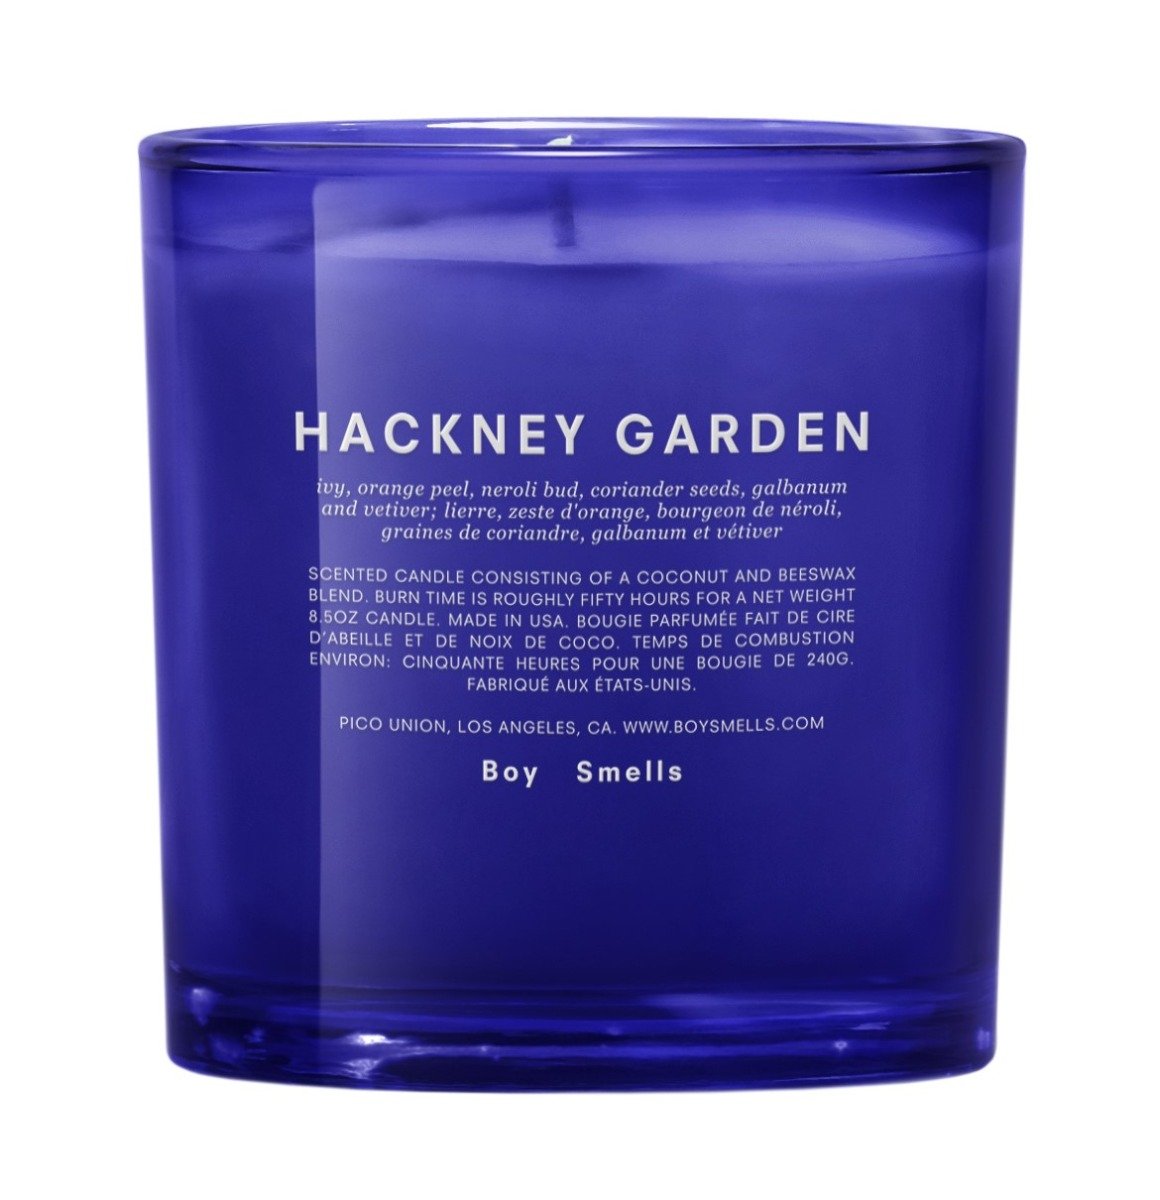 Hackney Garden Candle (Secret Garden Collection)